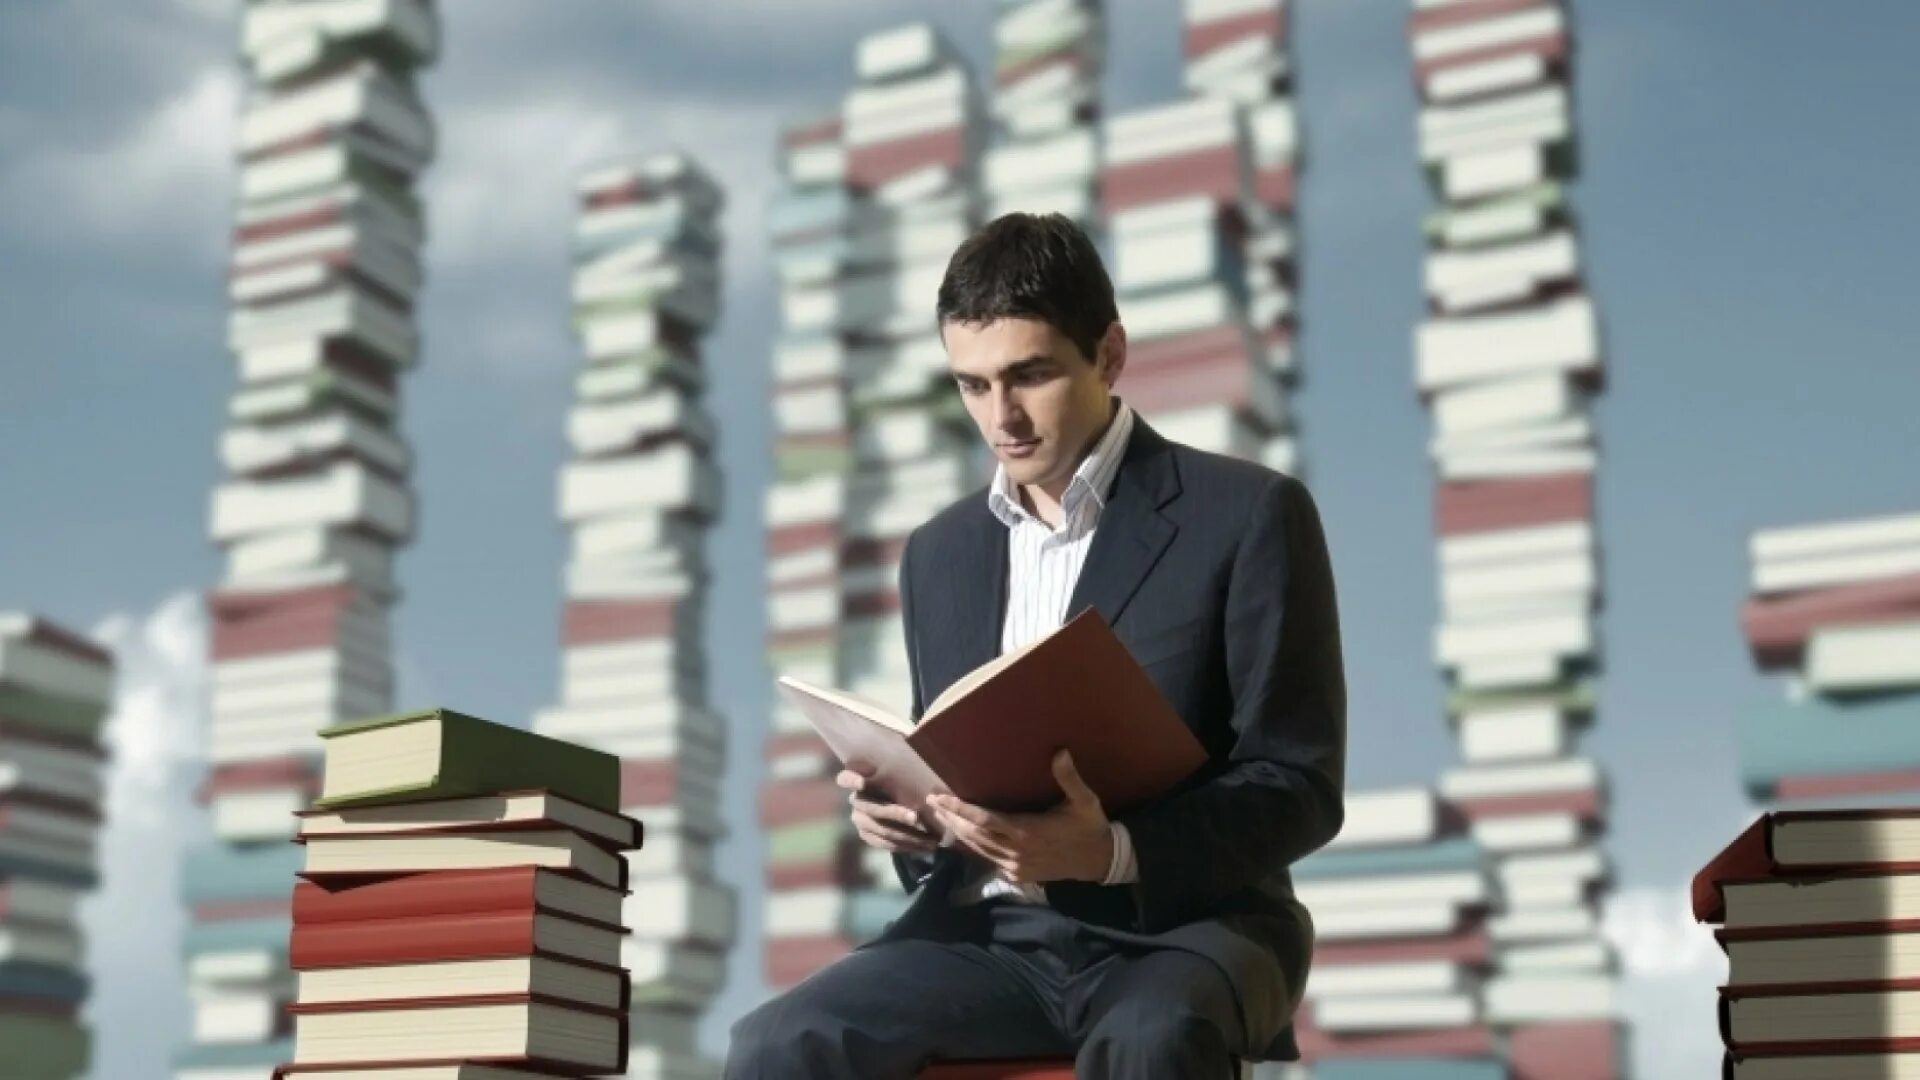 Книга человек. Человек с книжкой. Чтение людей. Человек читает.